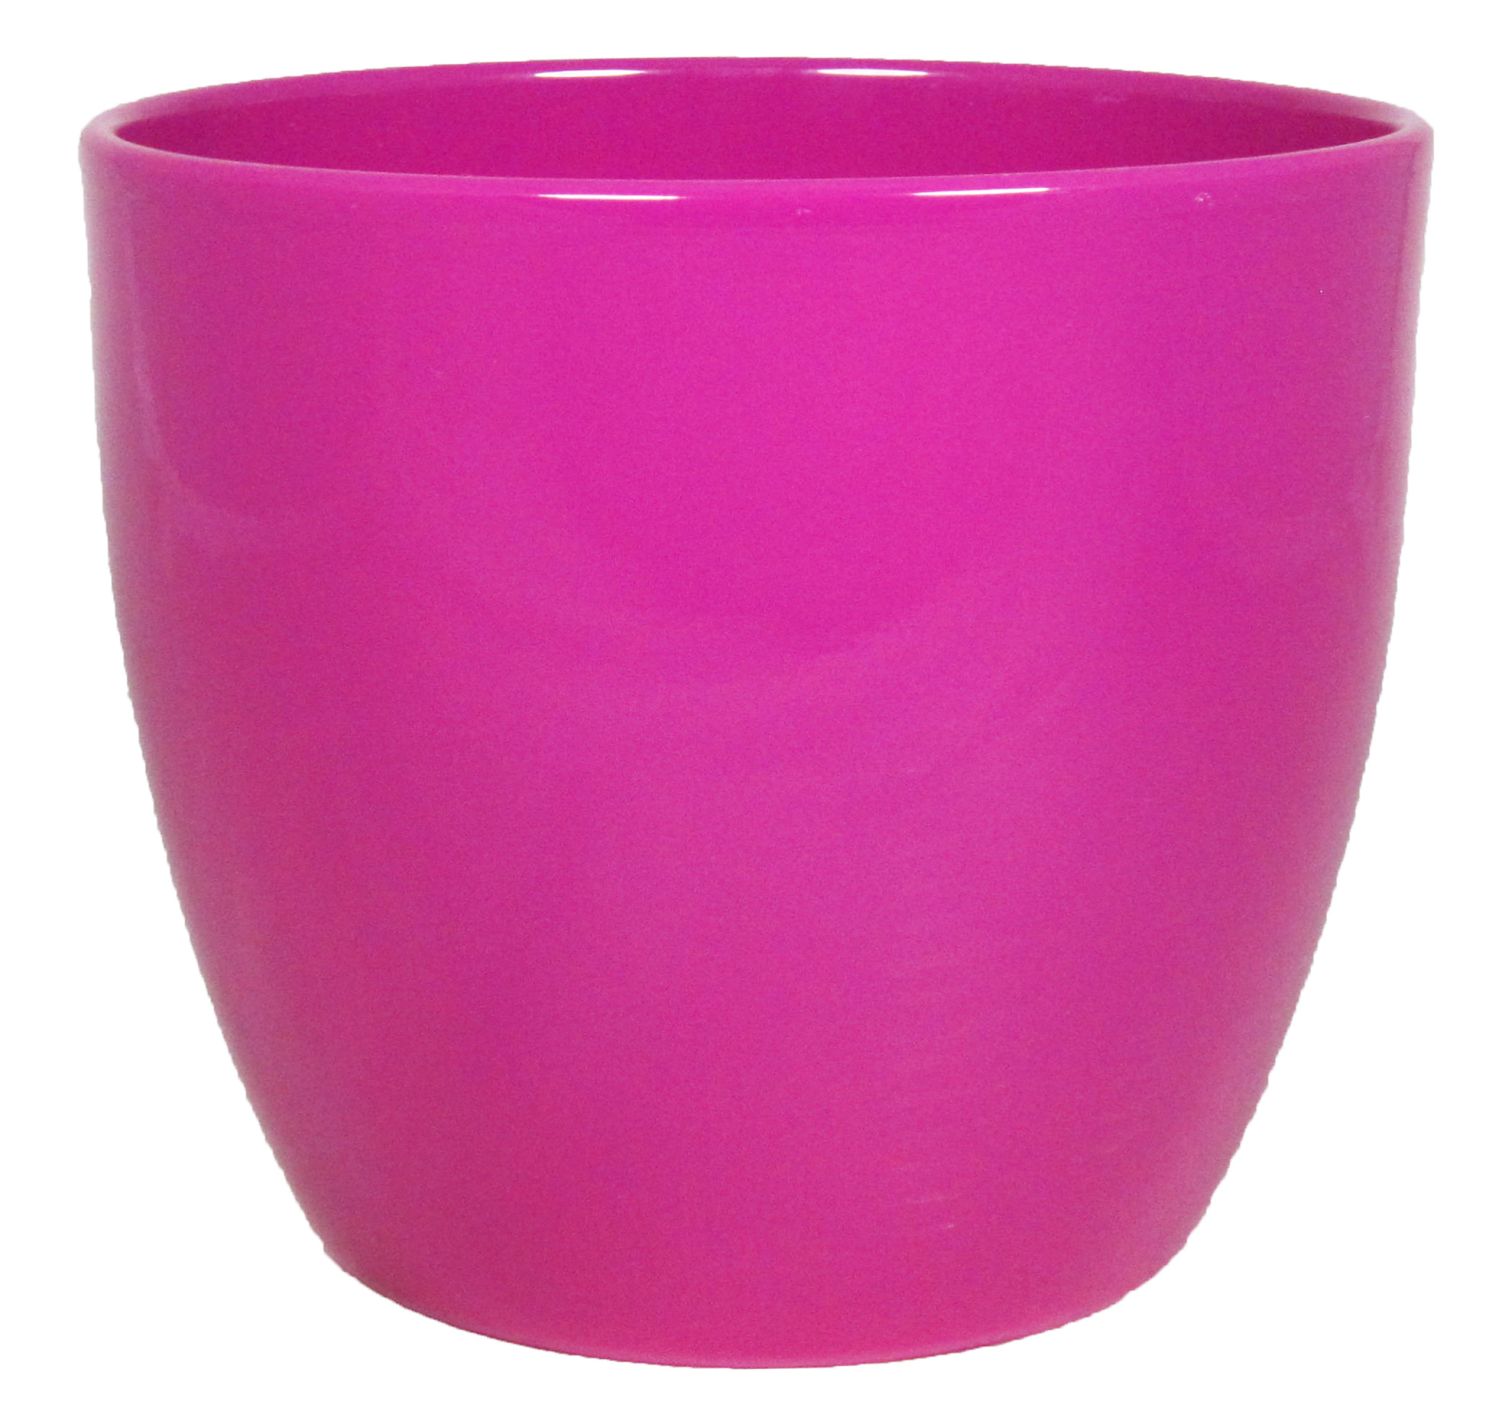 Ø25cm Übertopf Keramik, pink, 22,5cm, BASAR, TEHERAN